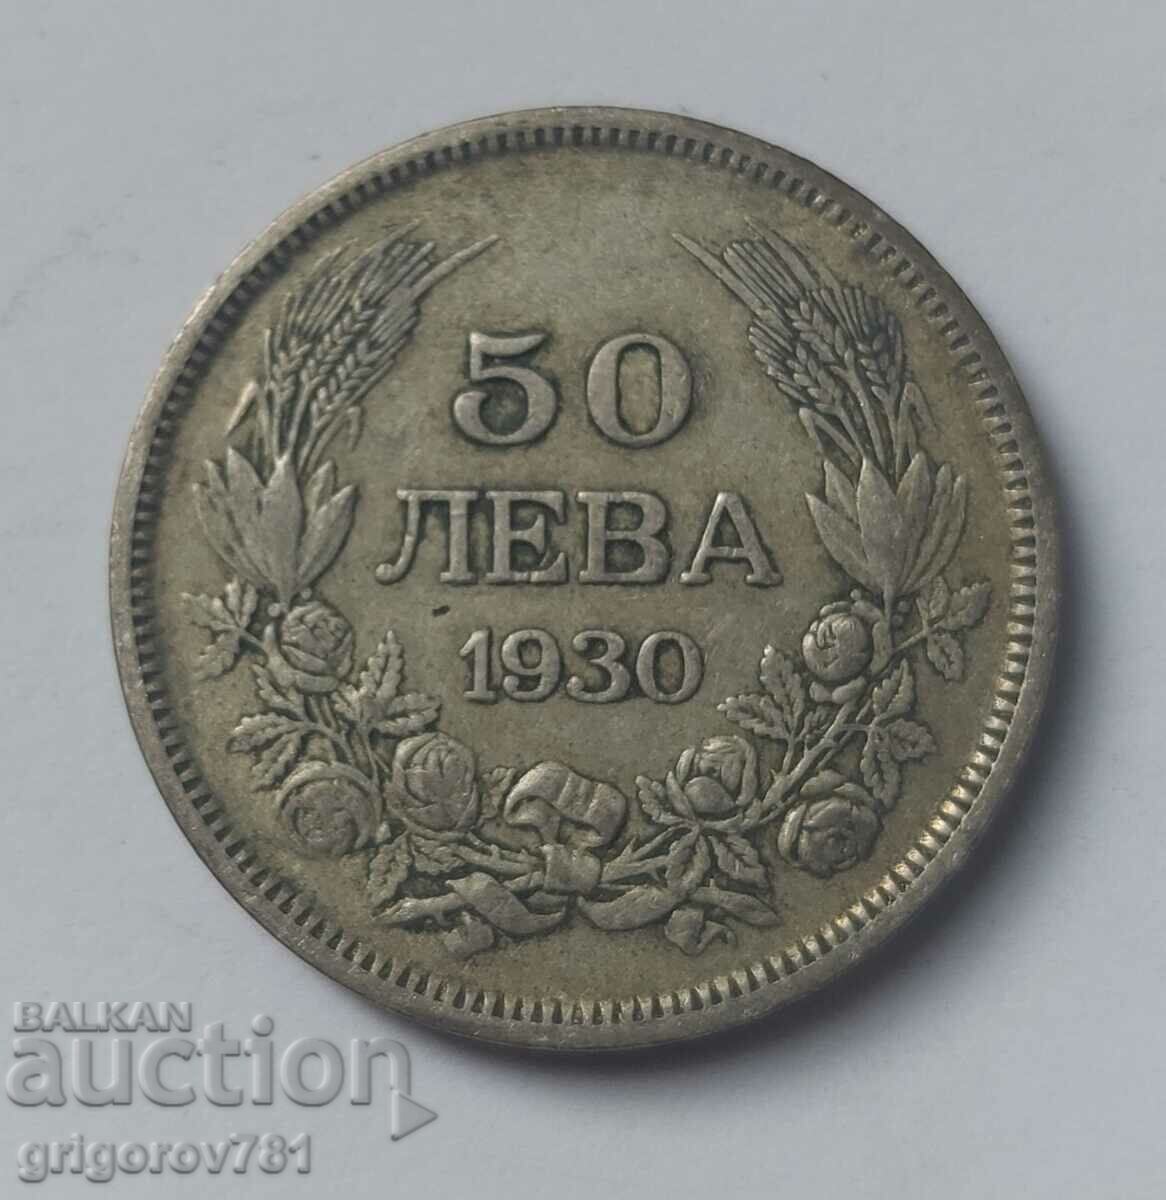 Ασήμι 50 λέβα Βουλγαρία 1930 - ασημένιο νόμισμα #30